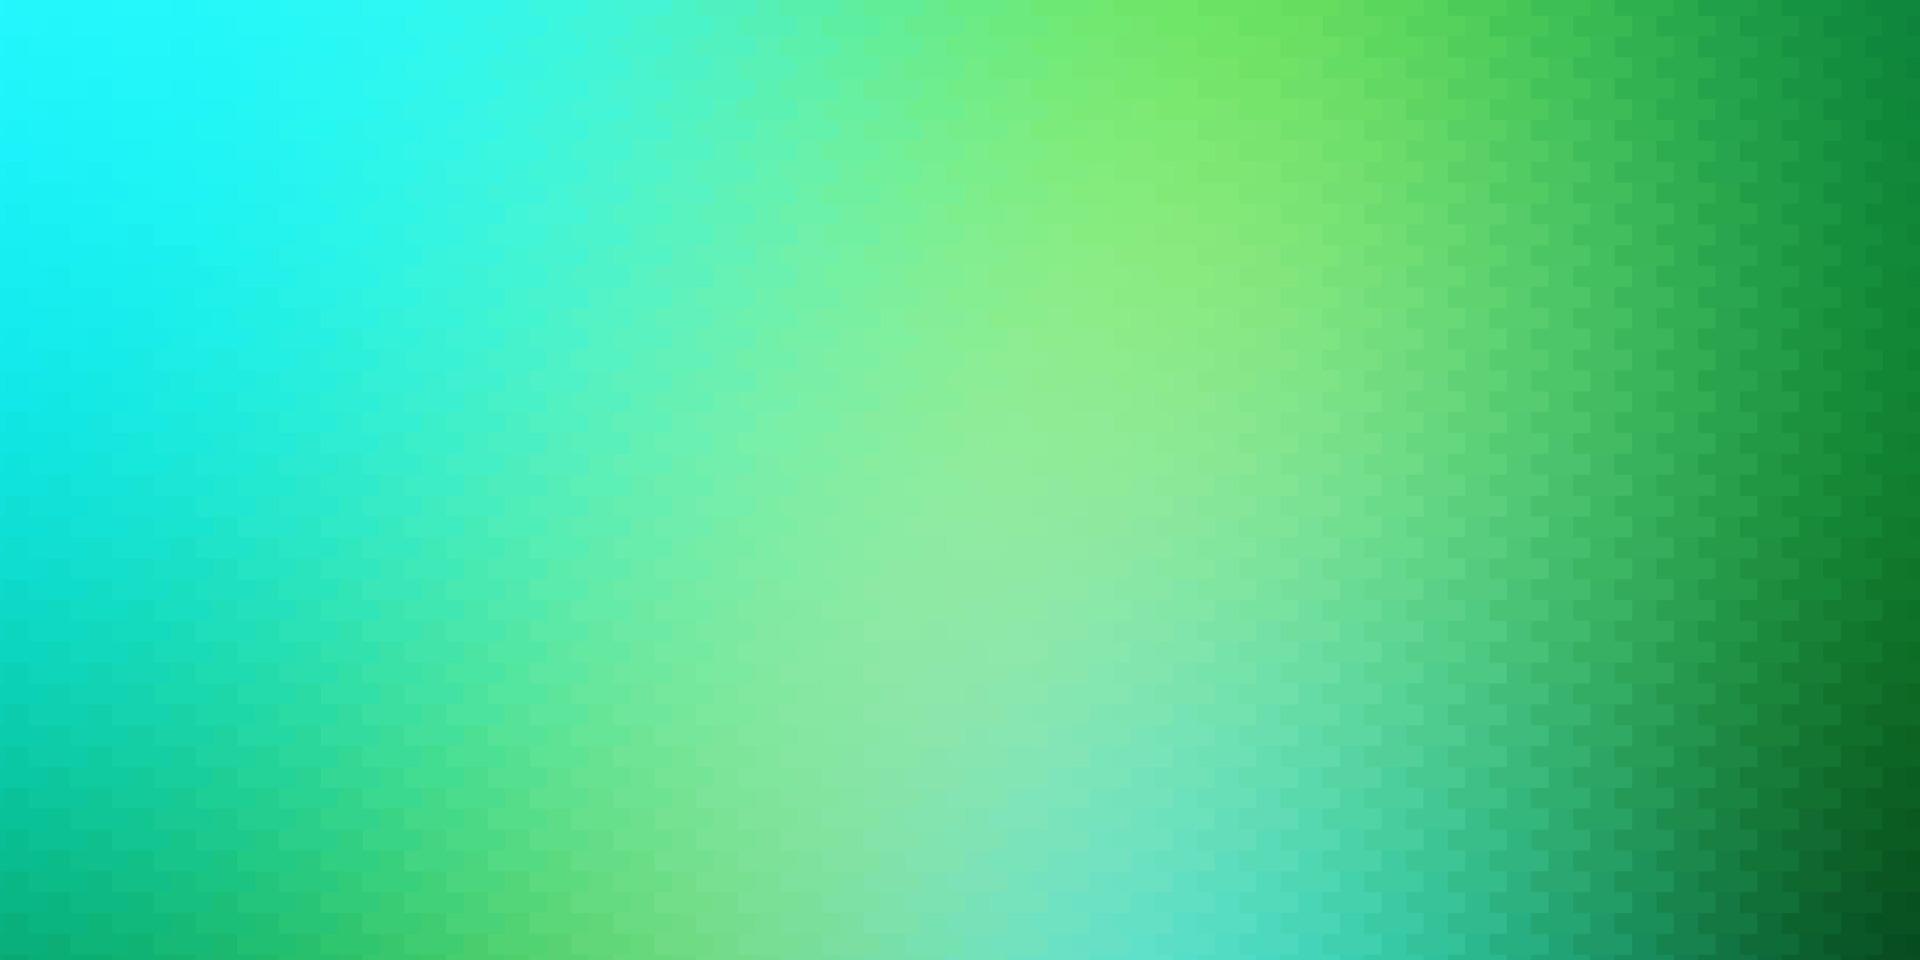 sfondo vettoriale azzurro, verde in stile poligonale.